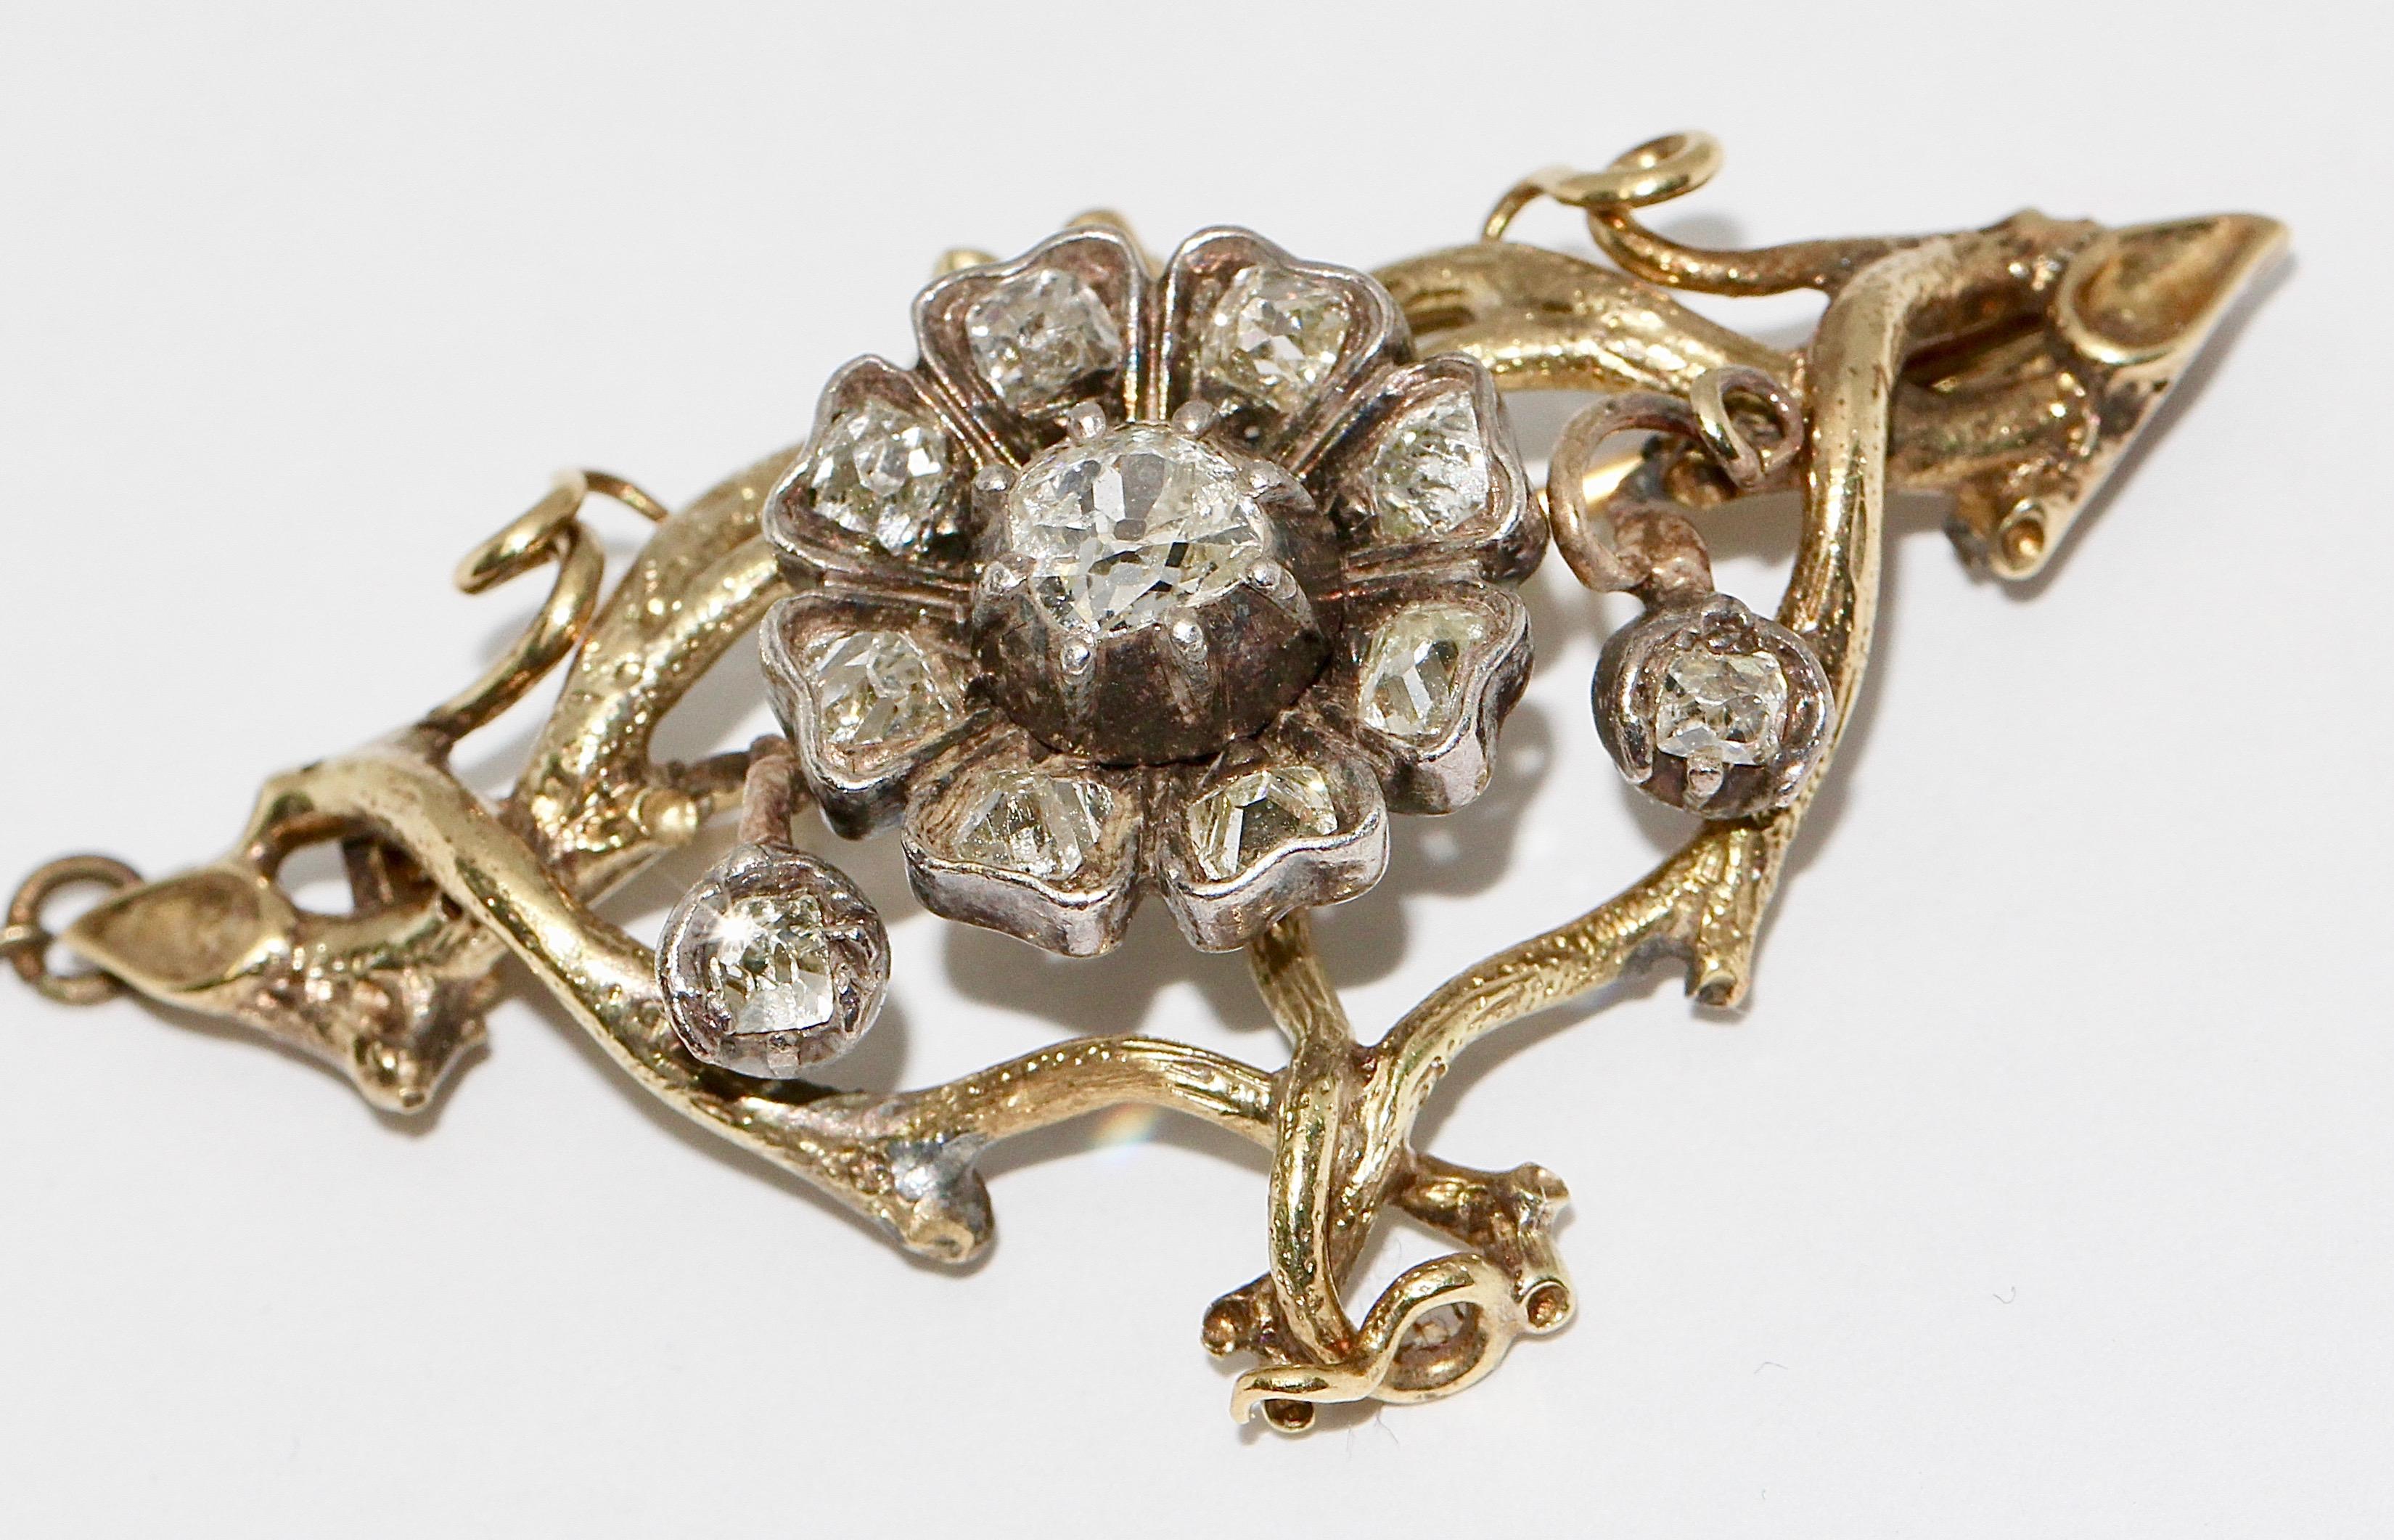 Antike, barocke Gold-Diamant-Brosche.

Der zentrale Diamant wiegt etwa 0,45 Karat.
Die Brosche ist außerdem mit einer Sicherheitsnadel versehen.